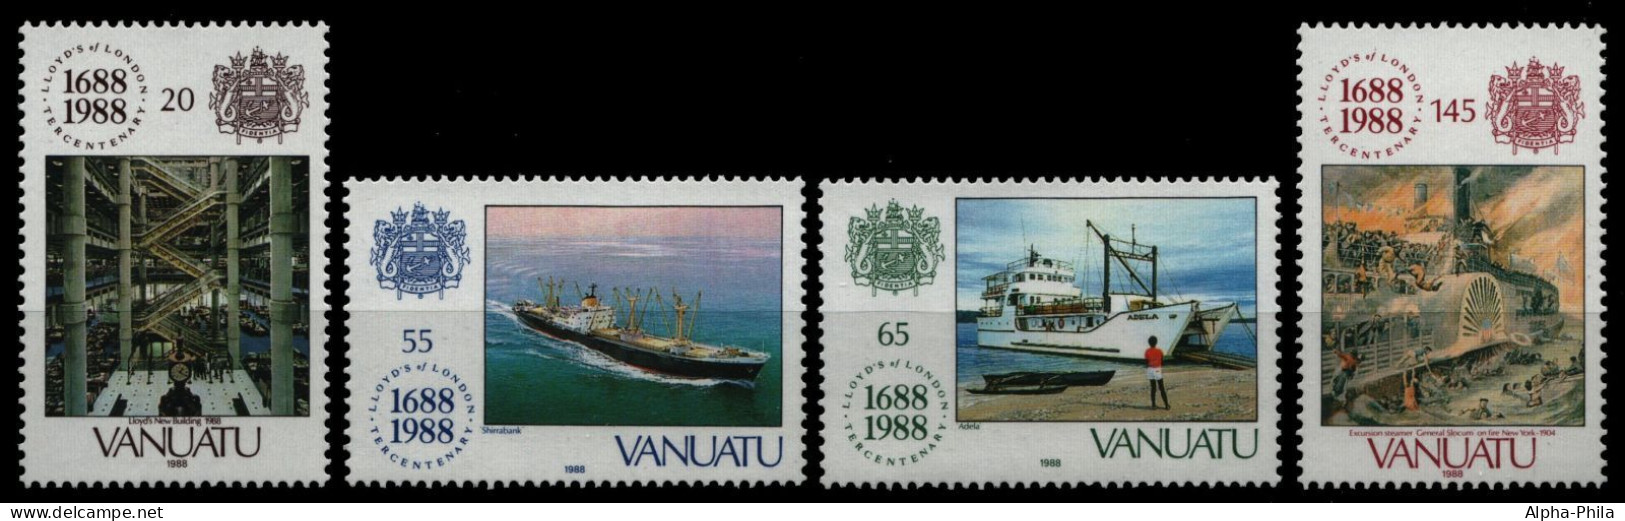 Vanuatu 1988 - Mi-Nr. 798-801 ** - MNH - Schiffe / Ships - Vanuatu (1980-...)